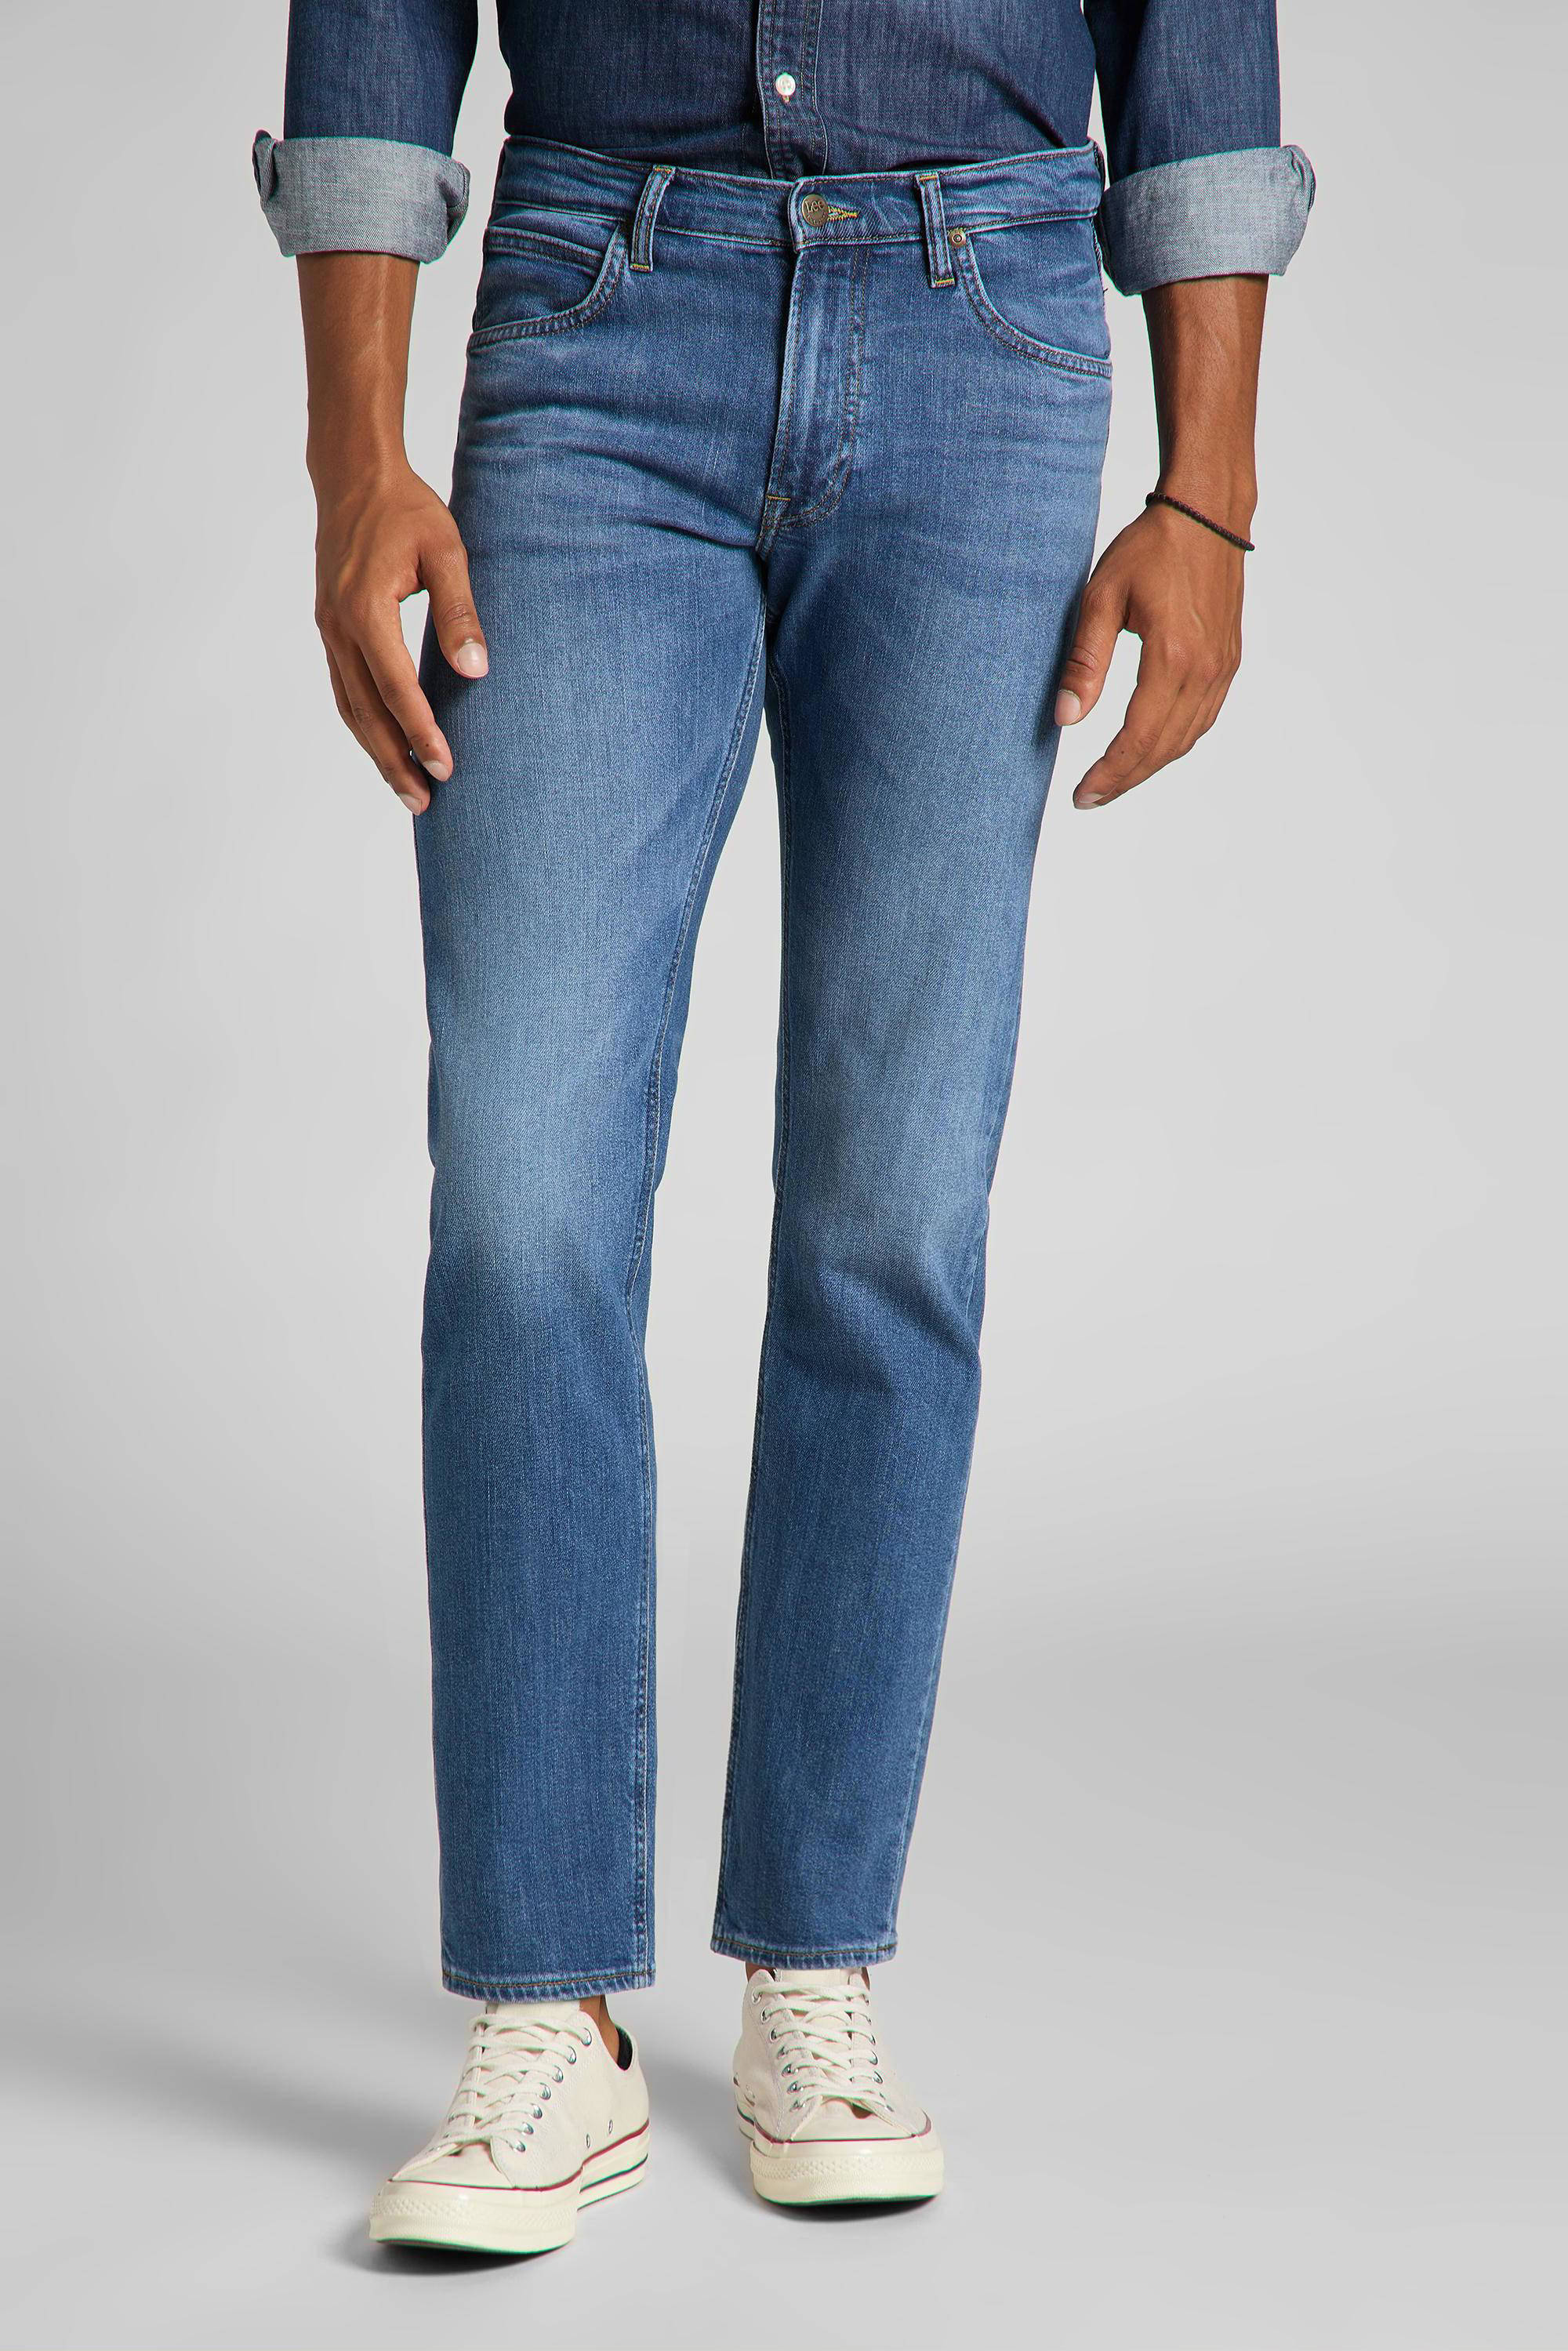 Dames Kleding voor voor heren Jeans voor heren Jeans met rechte pijp Lee Jeans Denim Skinny Jeans Rider in het Blauw Bespaar 19% 